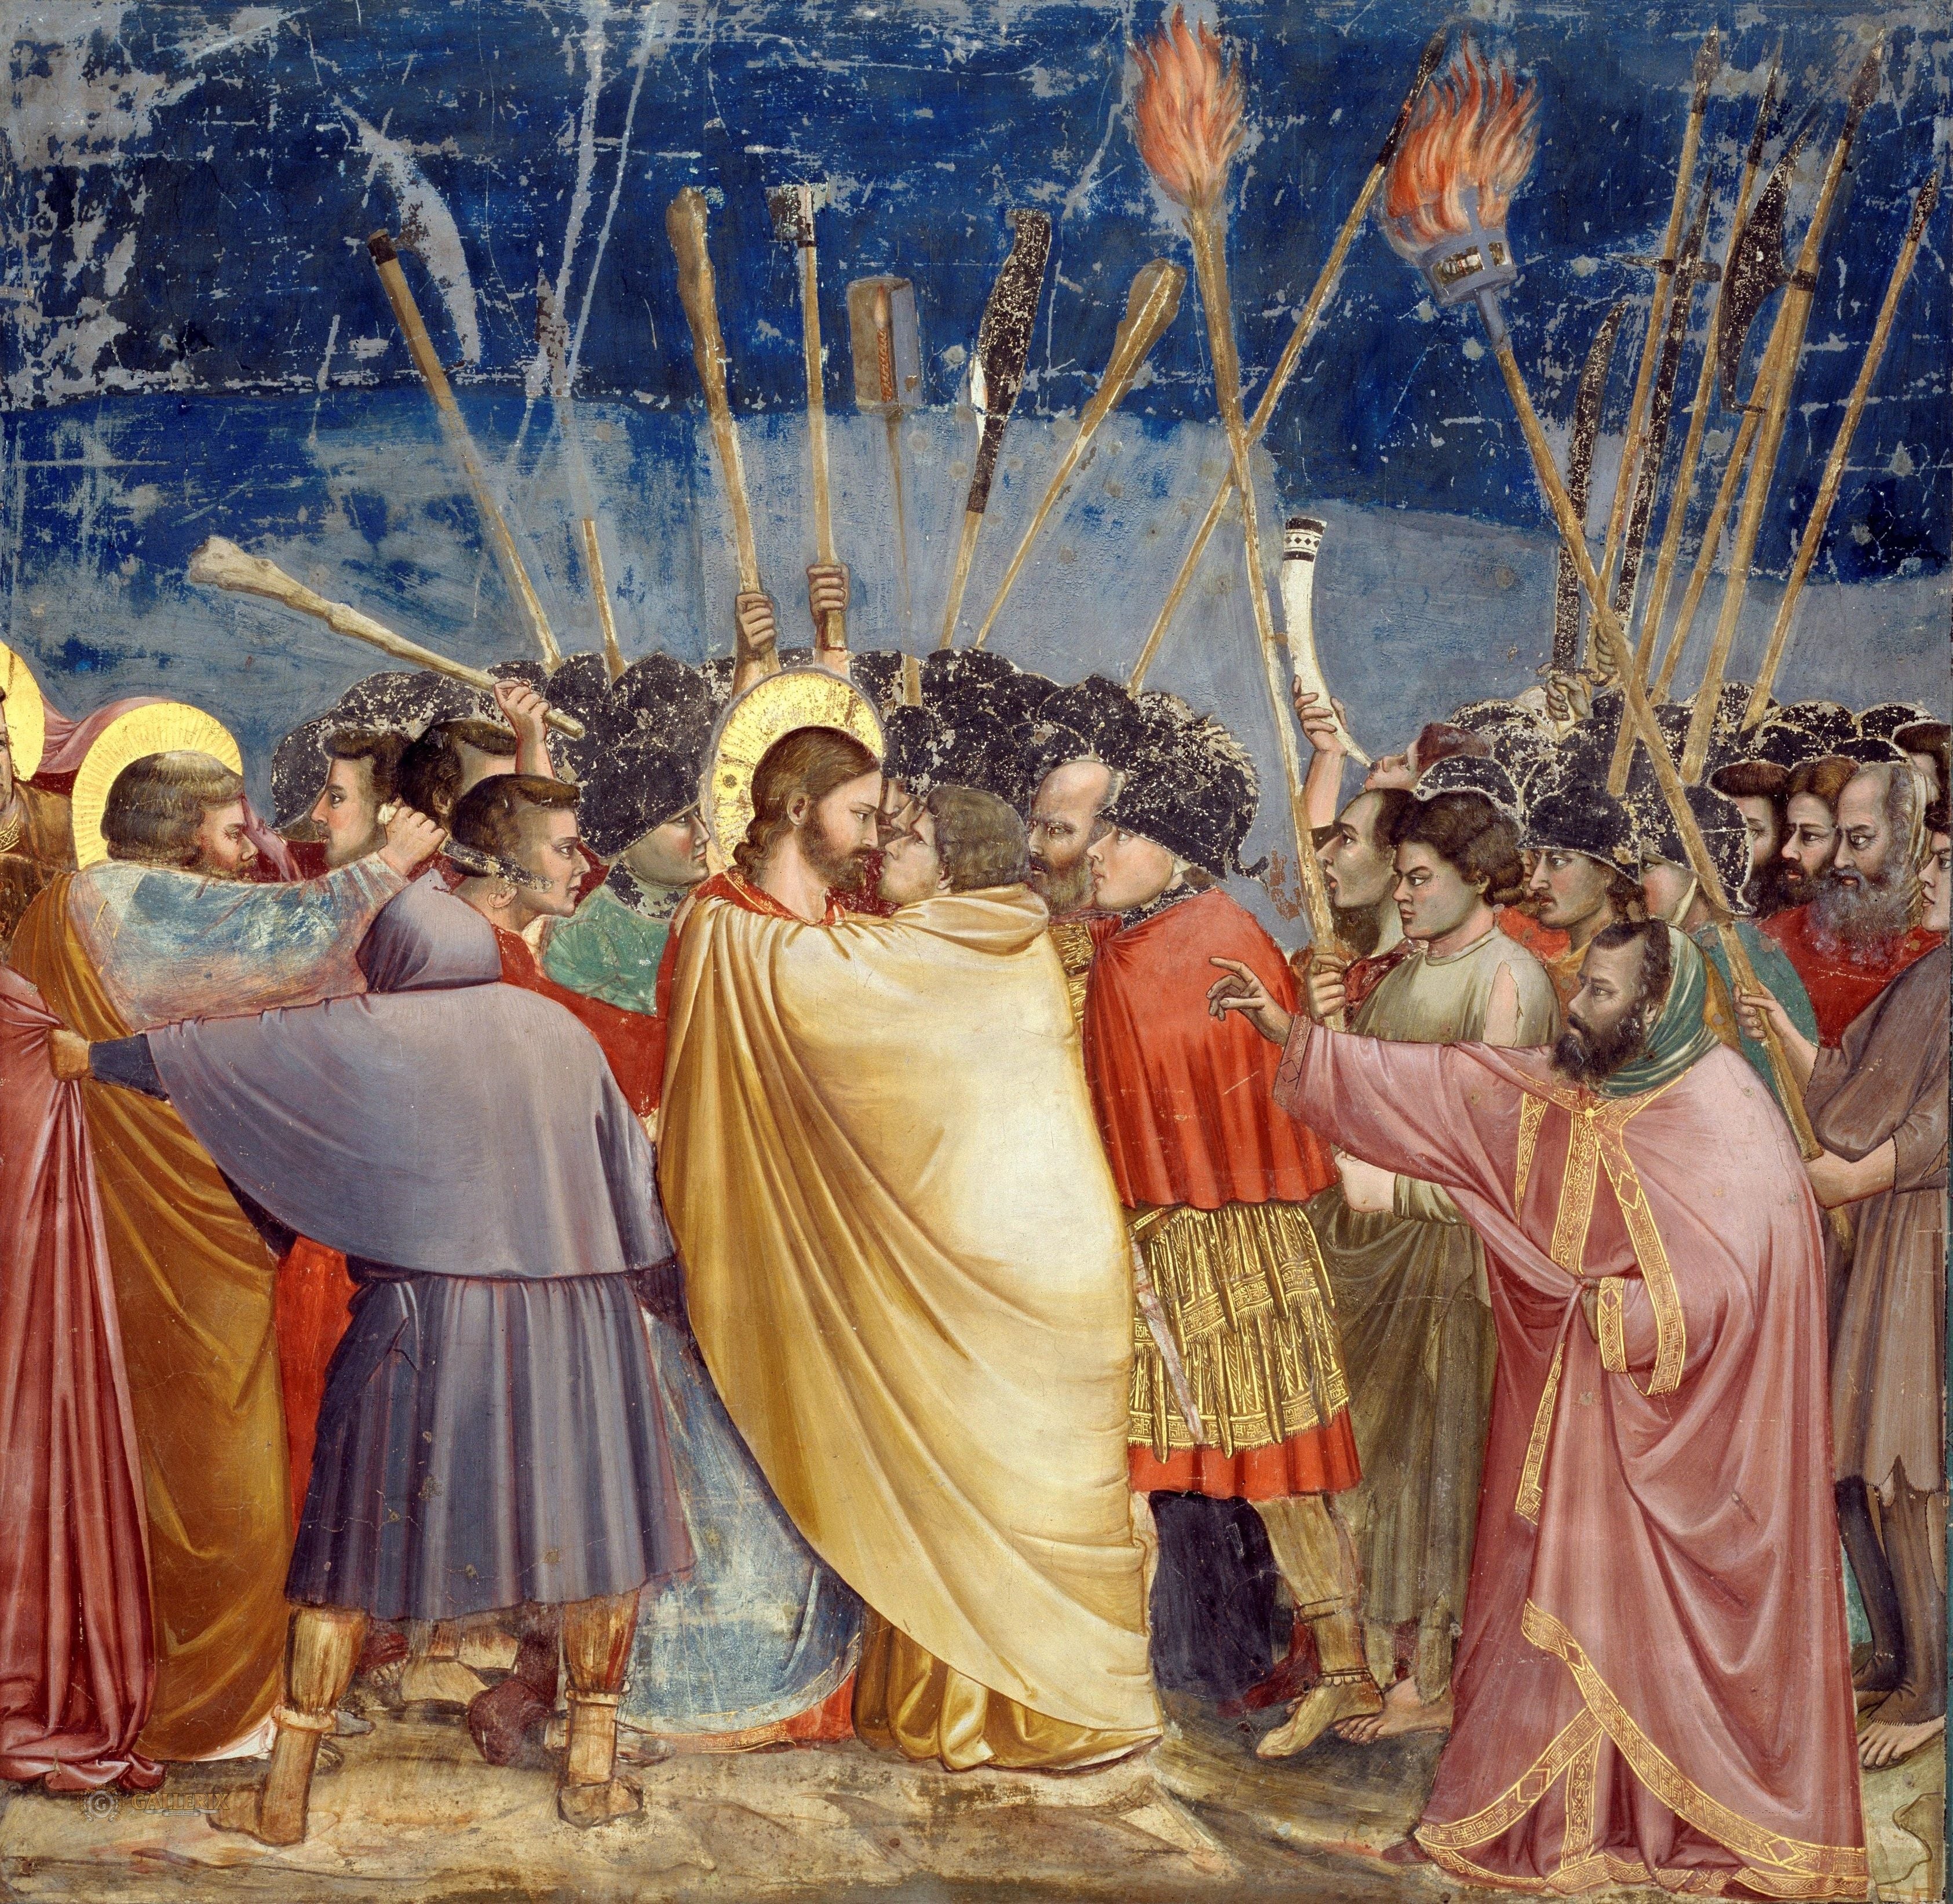 10 Most Famous Paintings Of The Renaissance Parblo Digital Art Blog Parblo